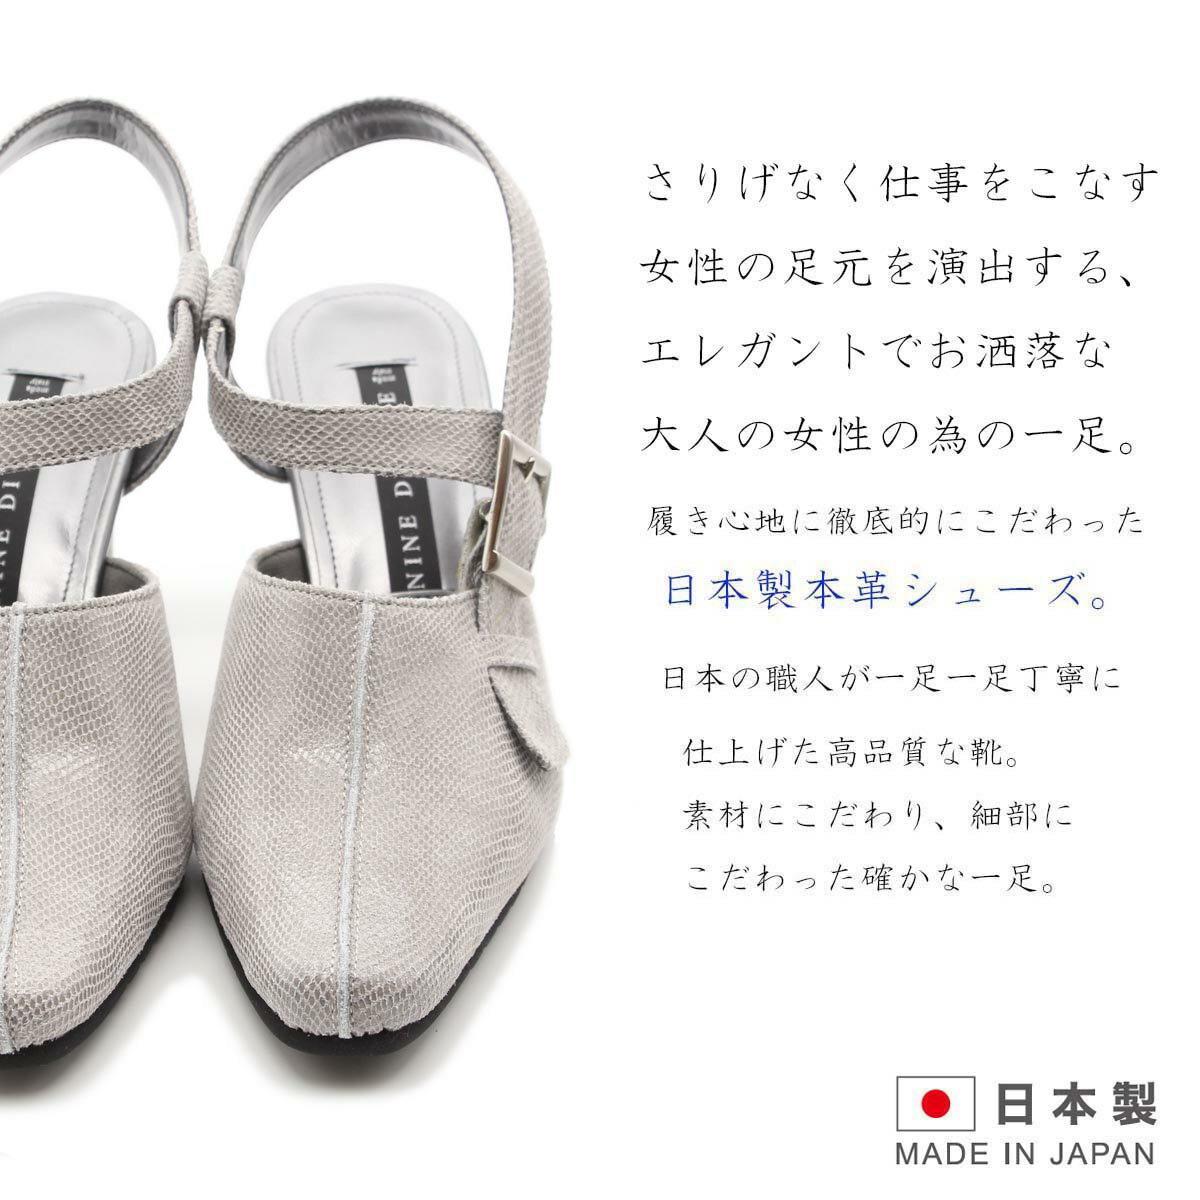 NINE DI NINE ナインディナイン 本革パンプス ストラップ フォーマル ビジネス 痛くない 本革 3E 日本製 柔らかい 6cm 黒 靴 幅広 24-7505